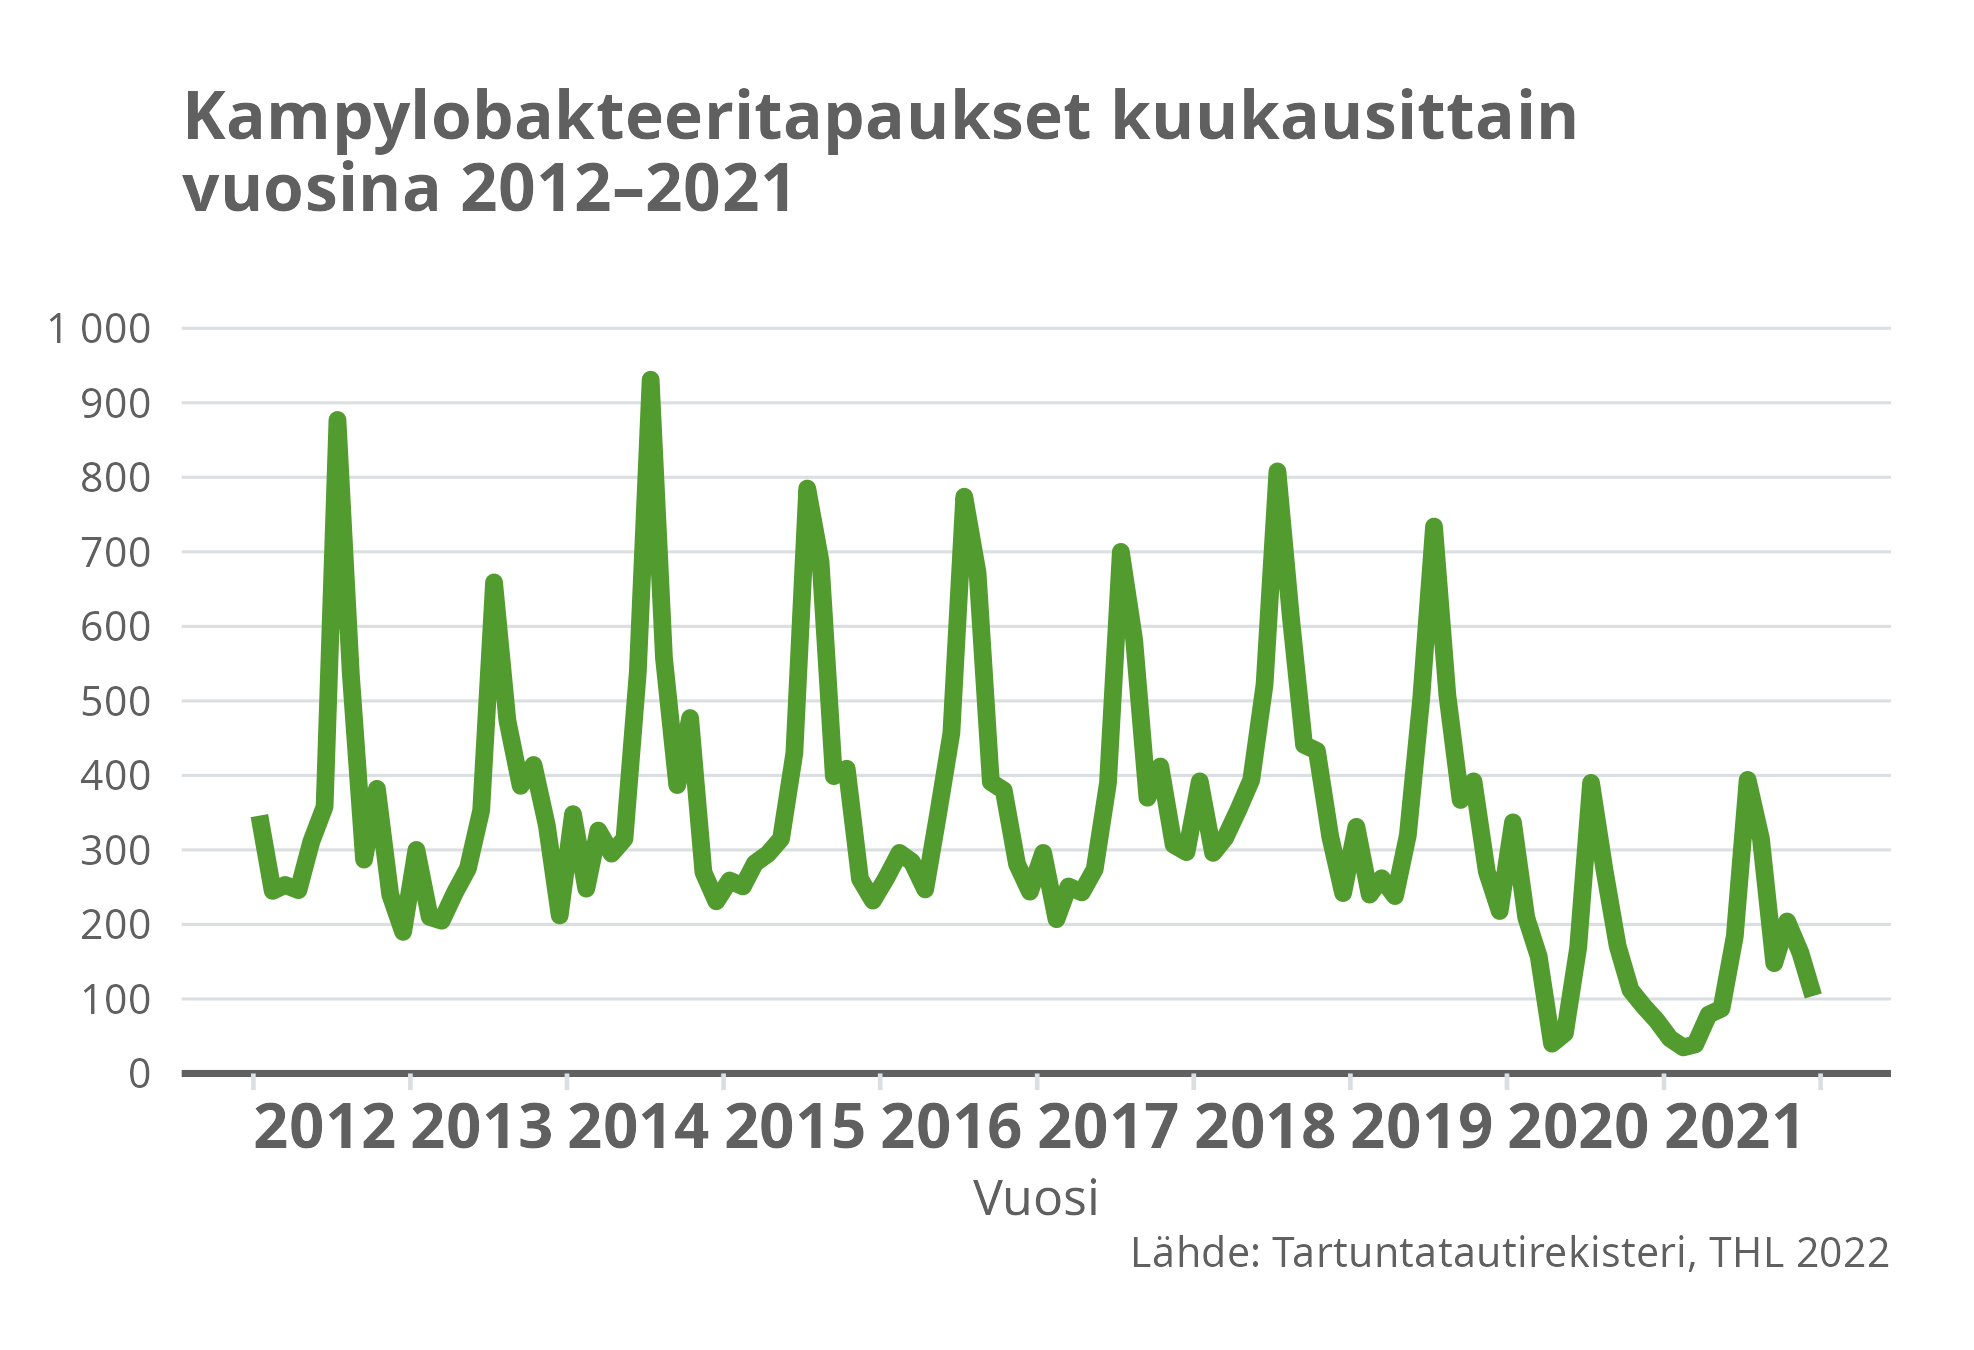 Kampylobakteerit kuukausittain vuosina 2012-2021.